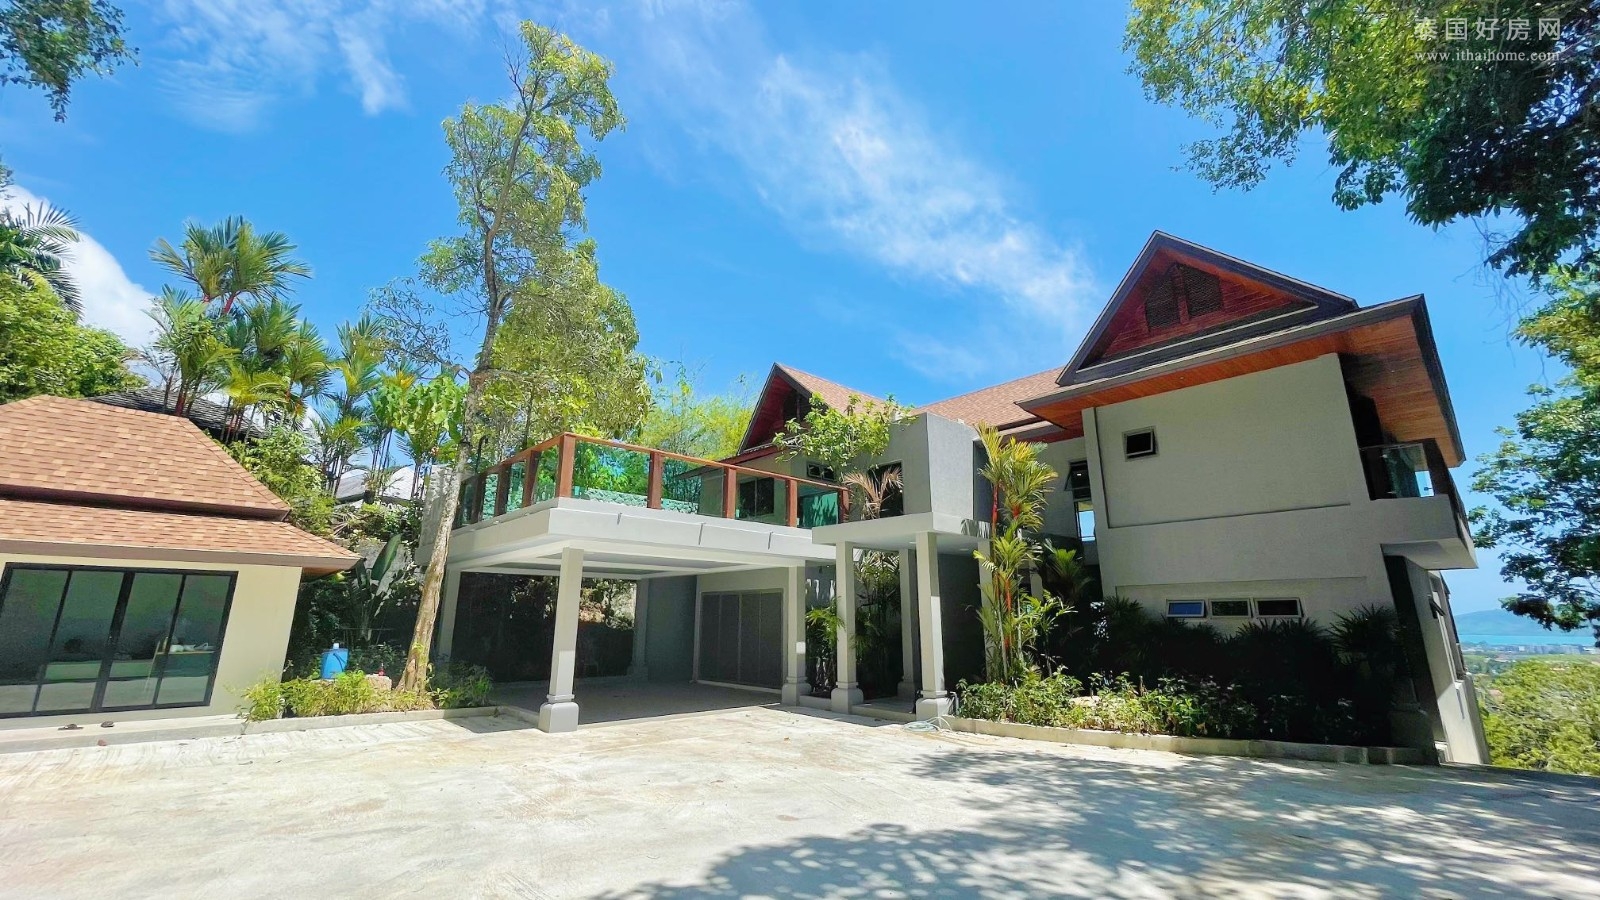 【推荐】泰国普吉岛查龙海滩附近全新独栋别墅出售 3卧1,920平米 售价4,500万泰铢